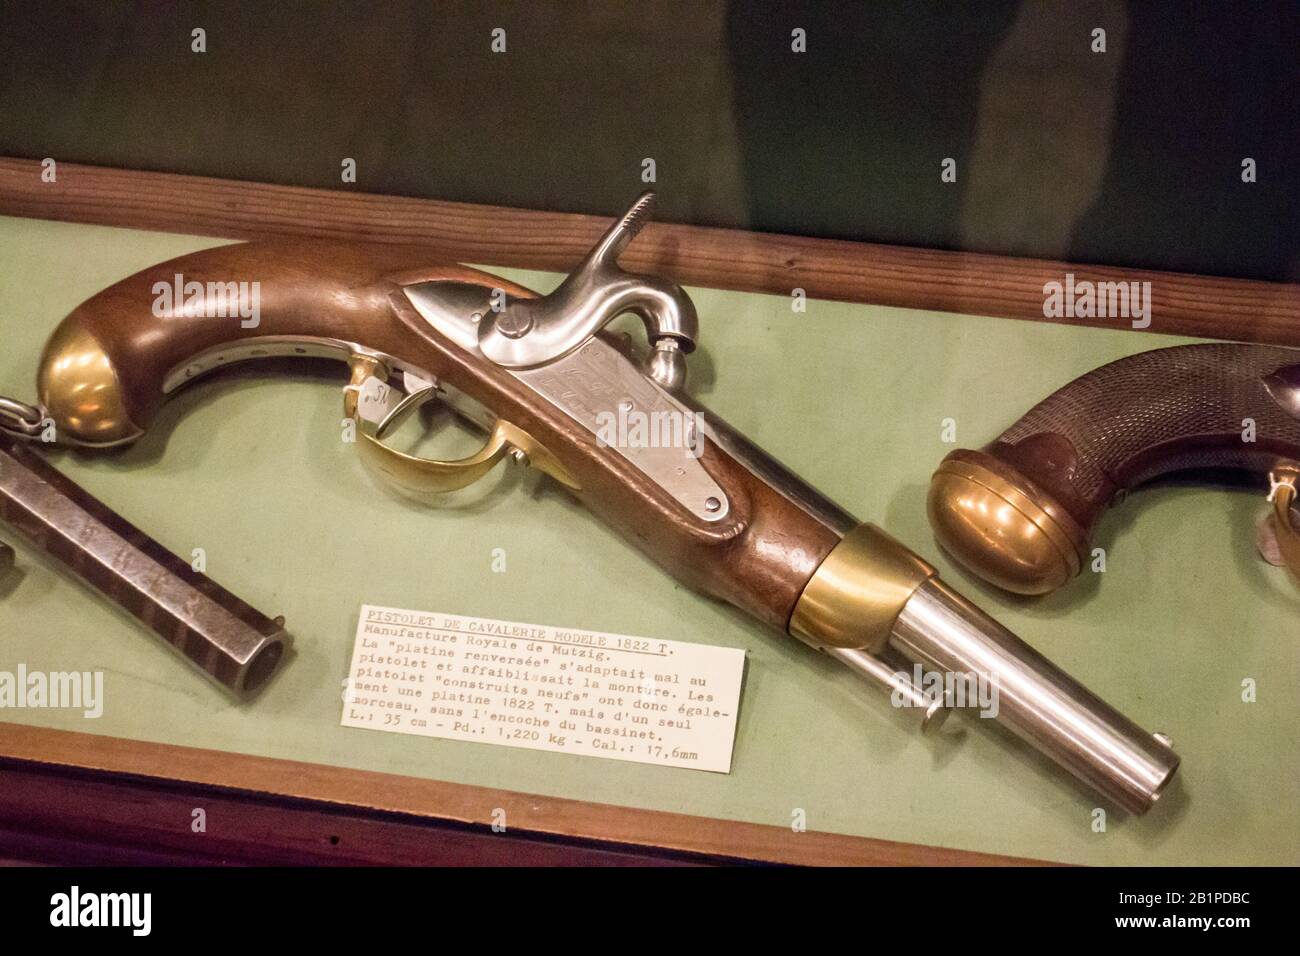 Musée de l'Emperi,Salon-de-Provence : Pistolet de Cavalerie modèle 1822T,calibre 17.6mm Manufacture Royale de Mutzig Stock Photo